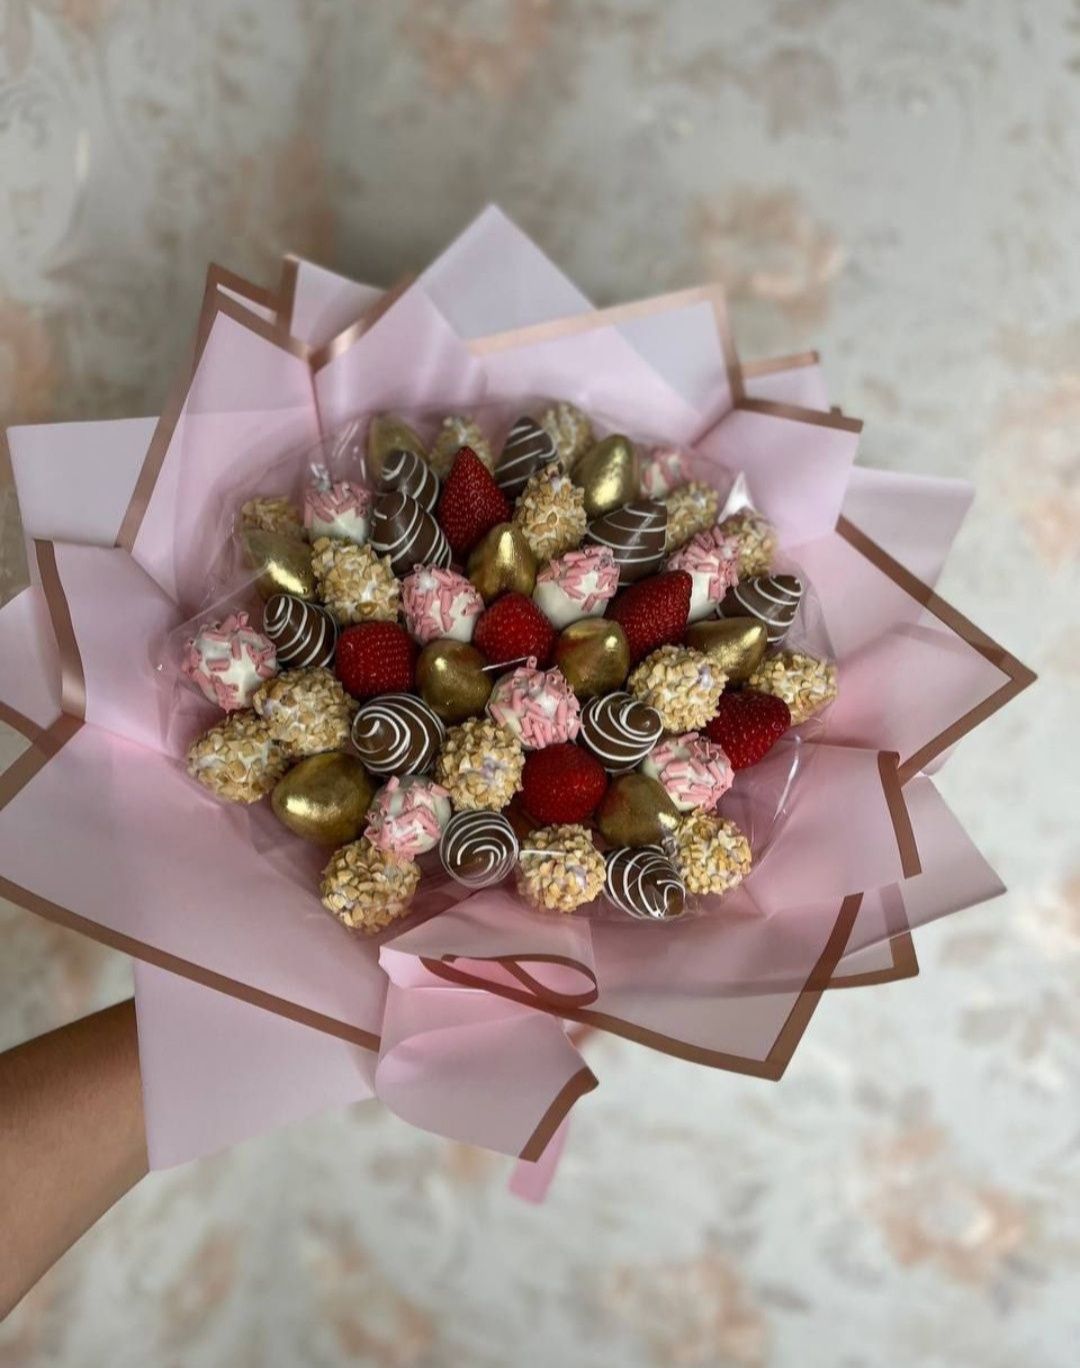 Клубника в шоколад, букет, цветы, гул, подарок, розы, десерт 8март,